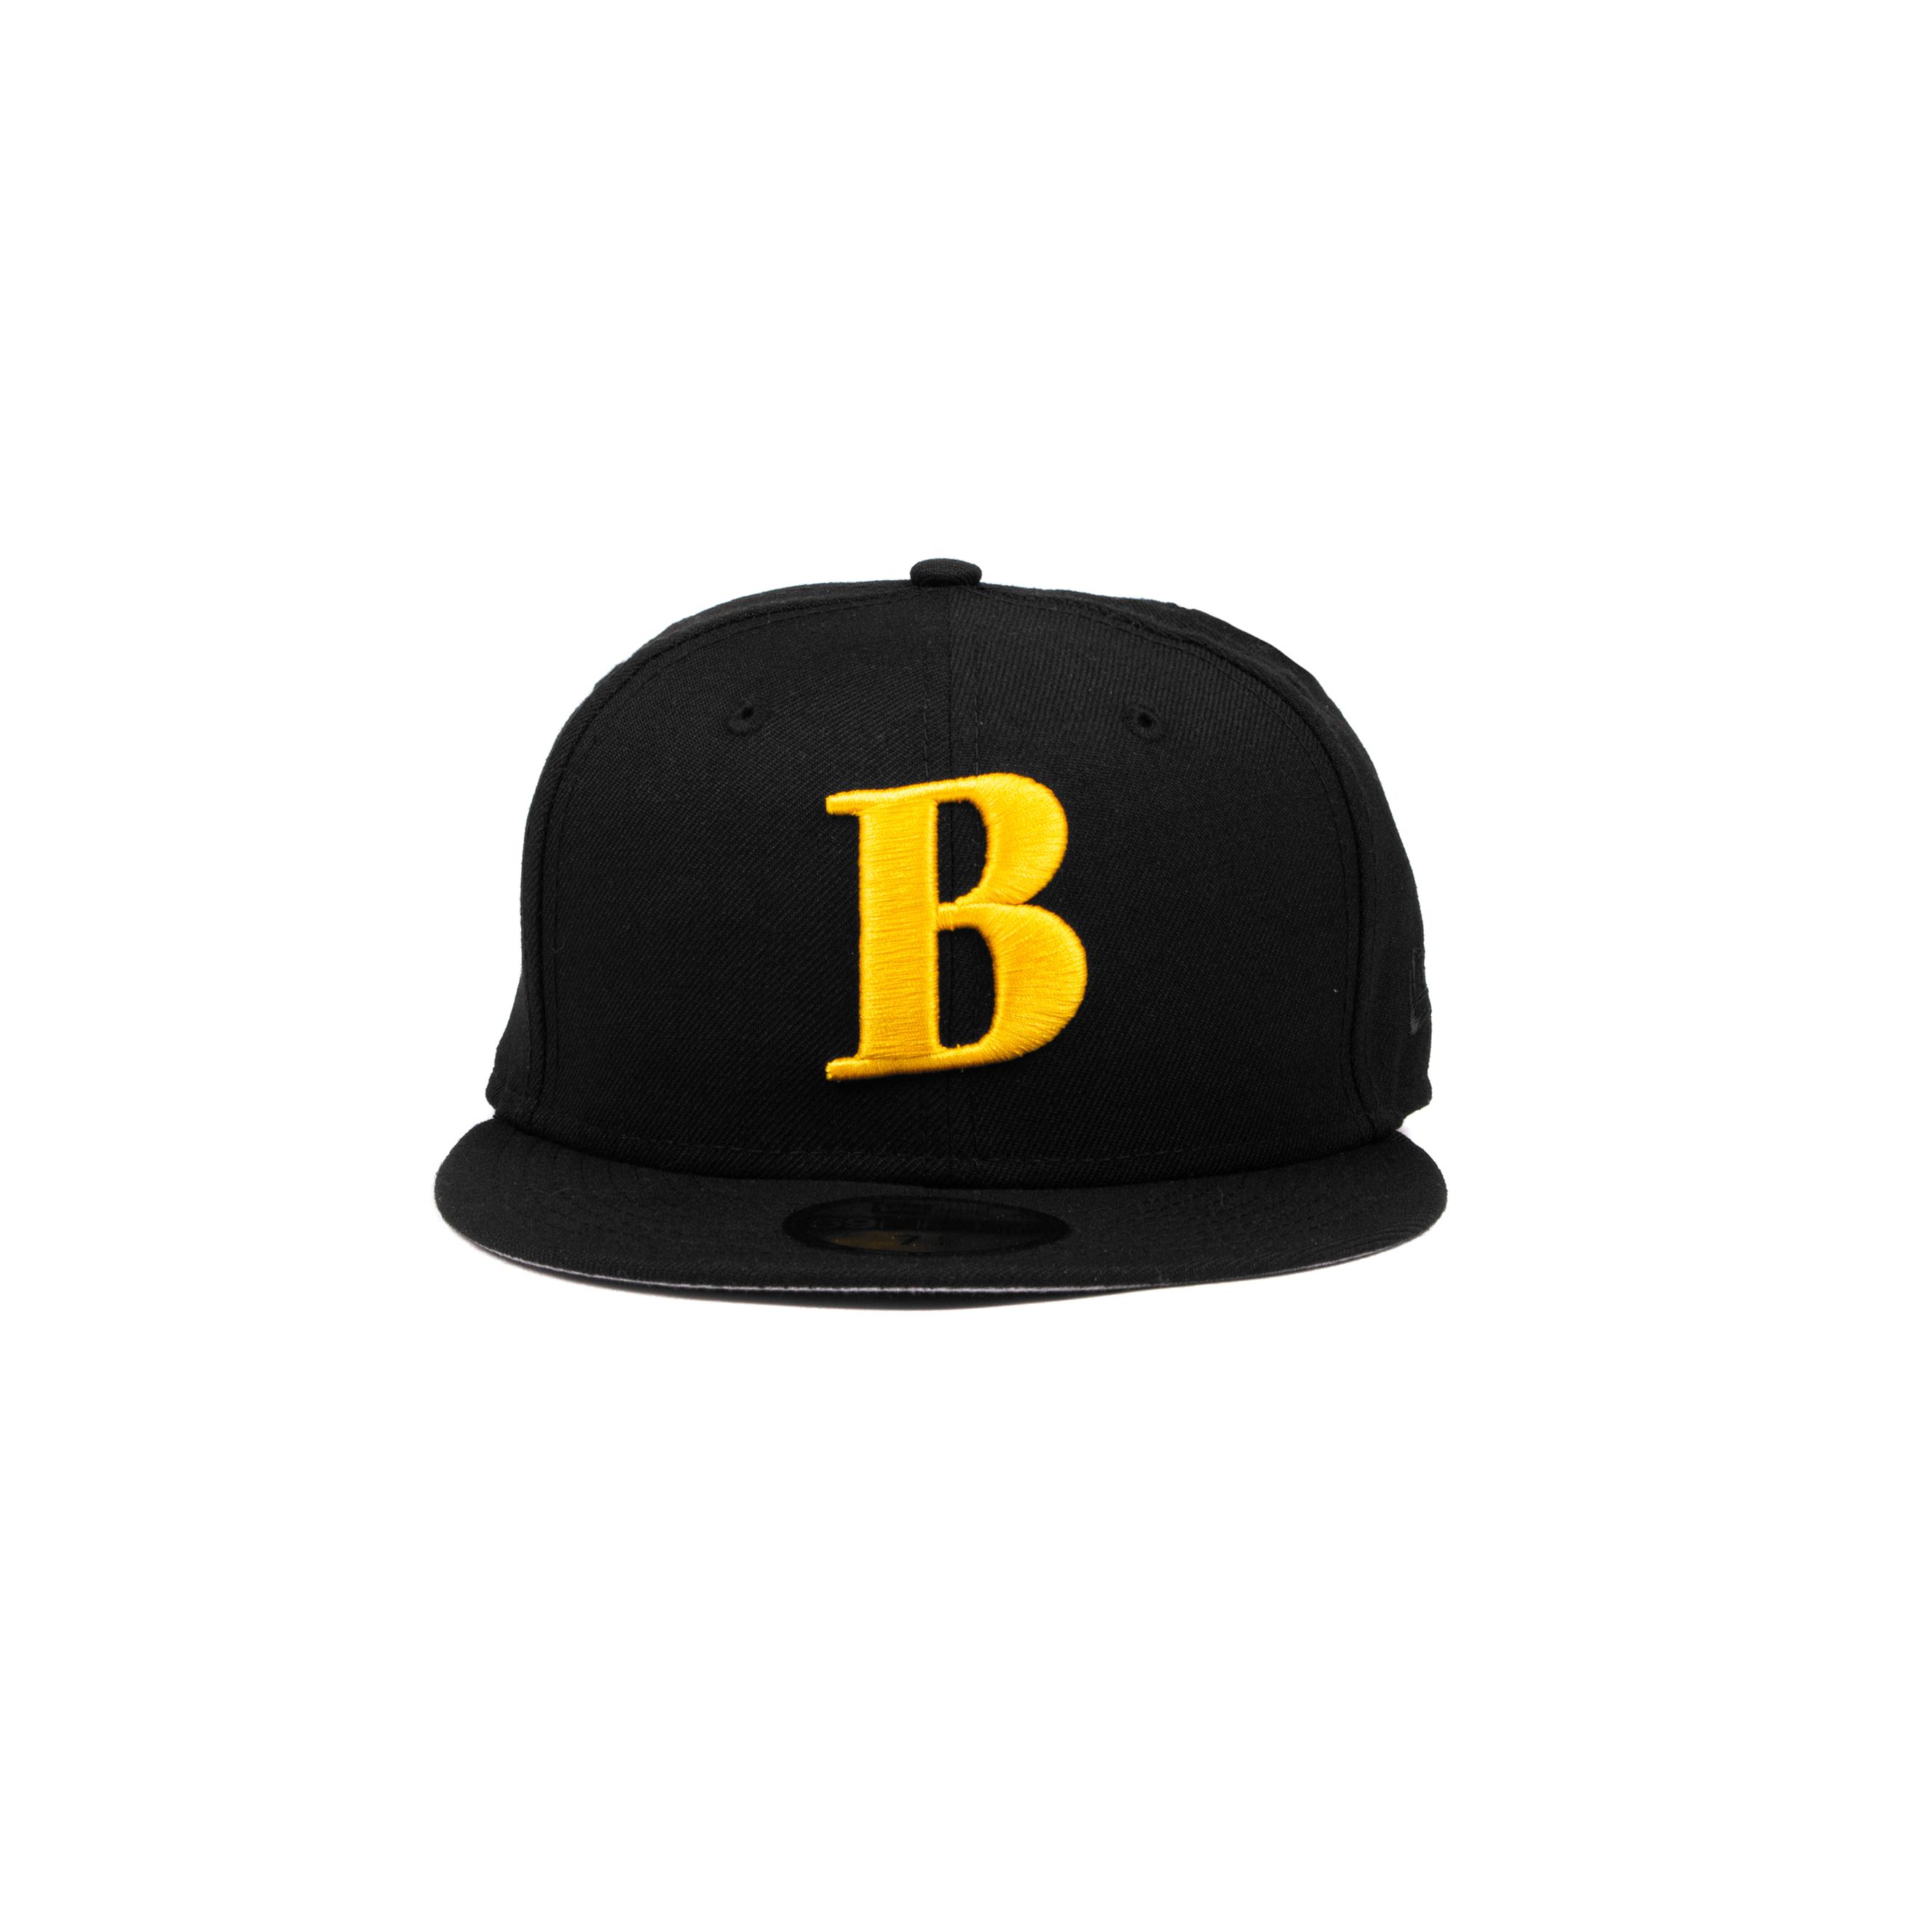 Better™ Gift Shop B Logo New Era Cap (Navy/White) by BETTER GIFT 